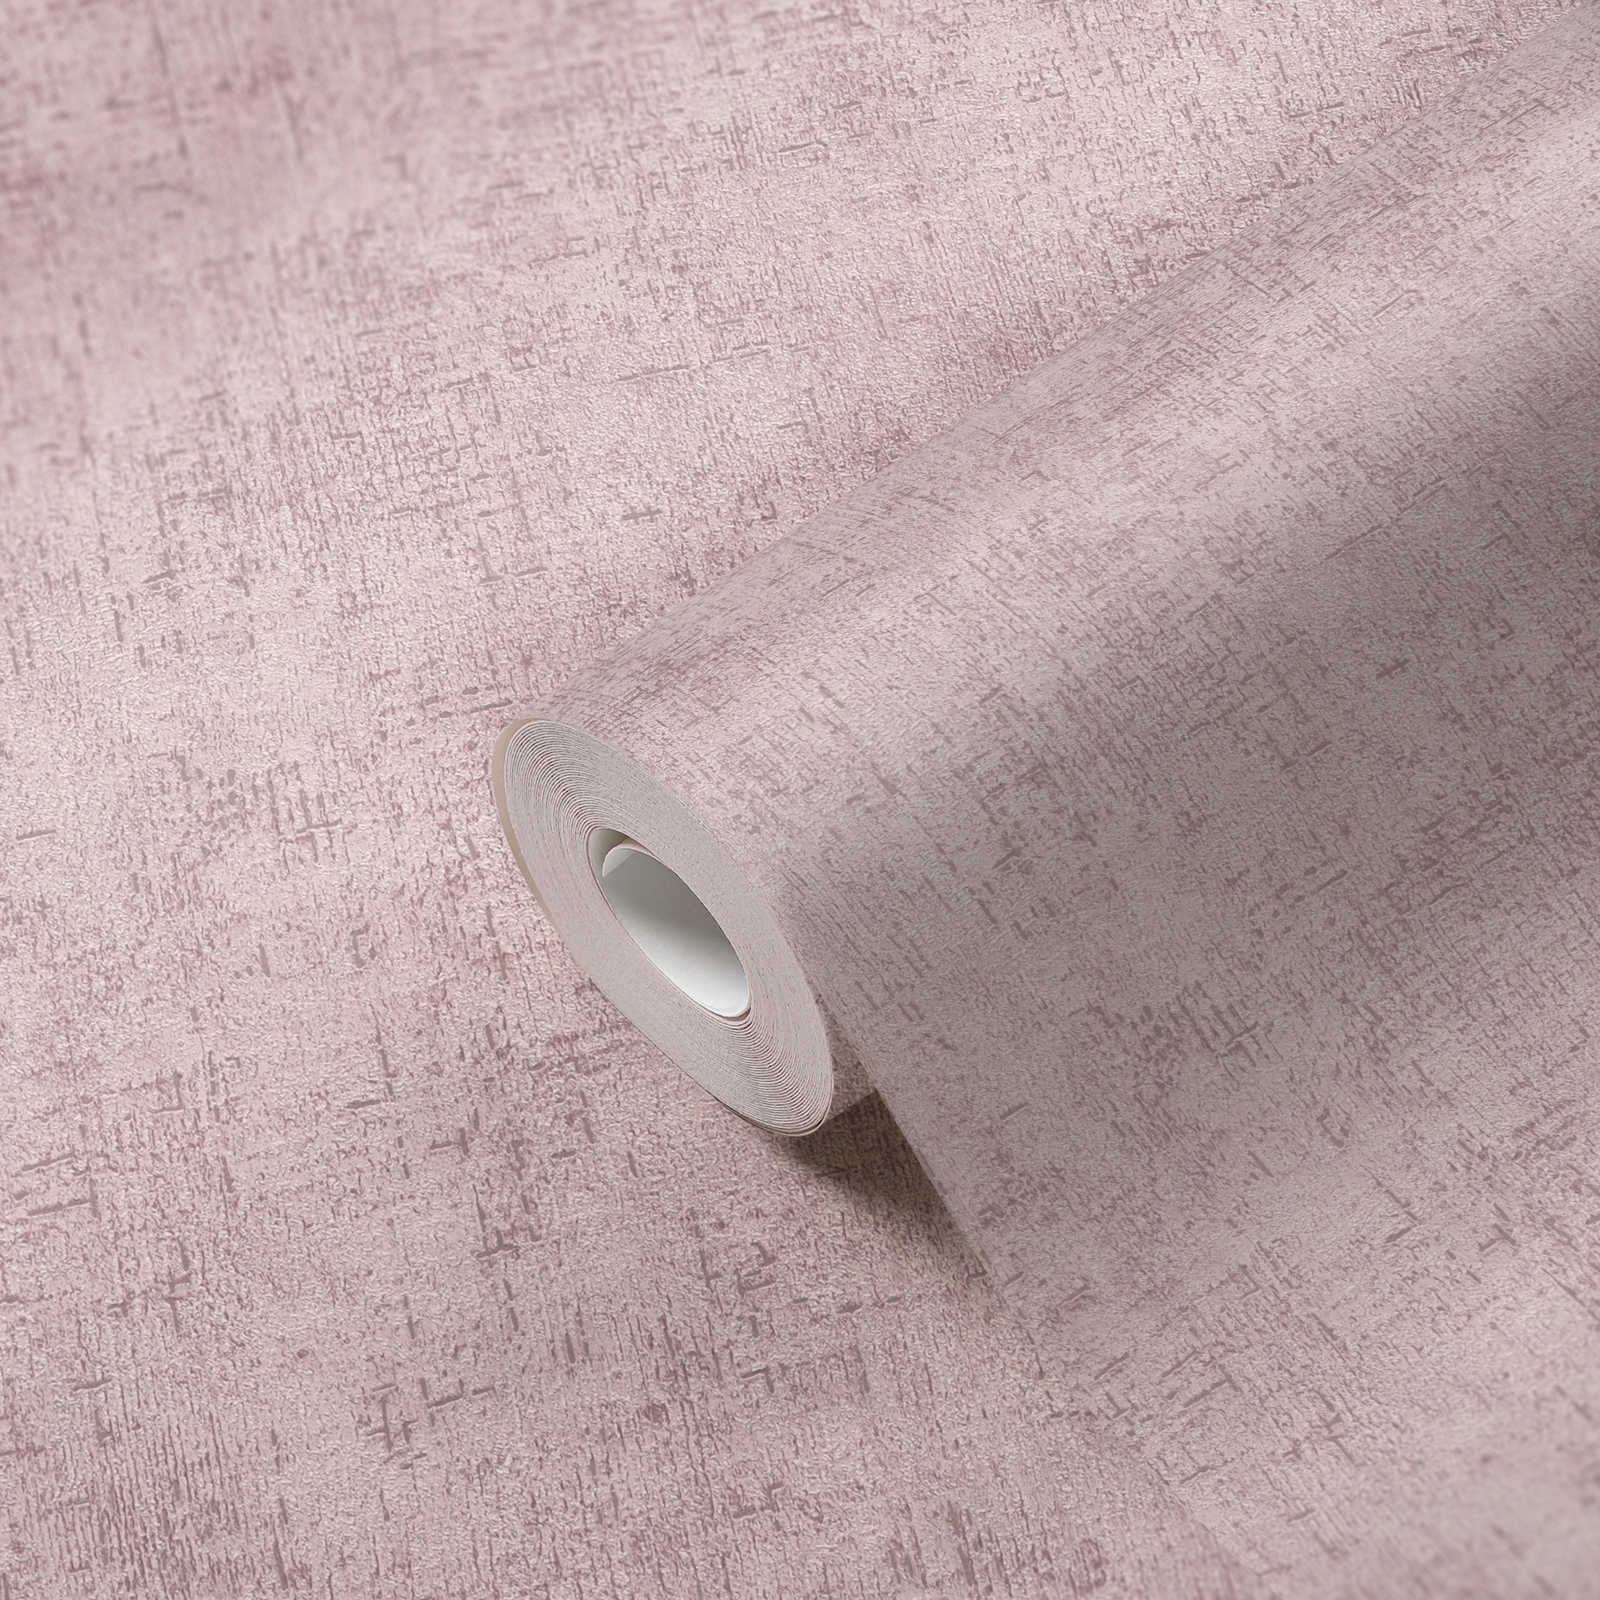             Vliestapete rustikale Putz-Struktur – Rosa, Glänzend
        